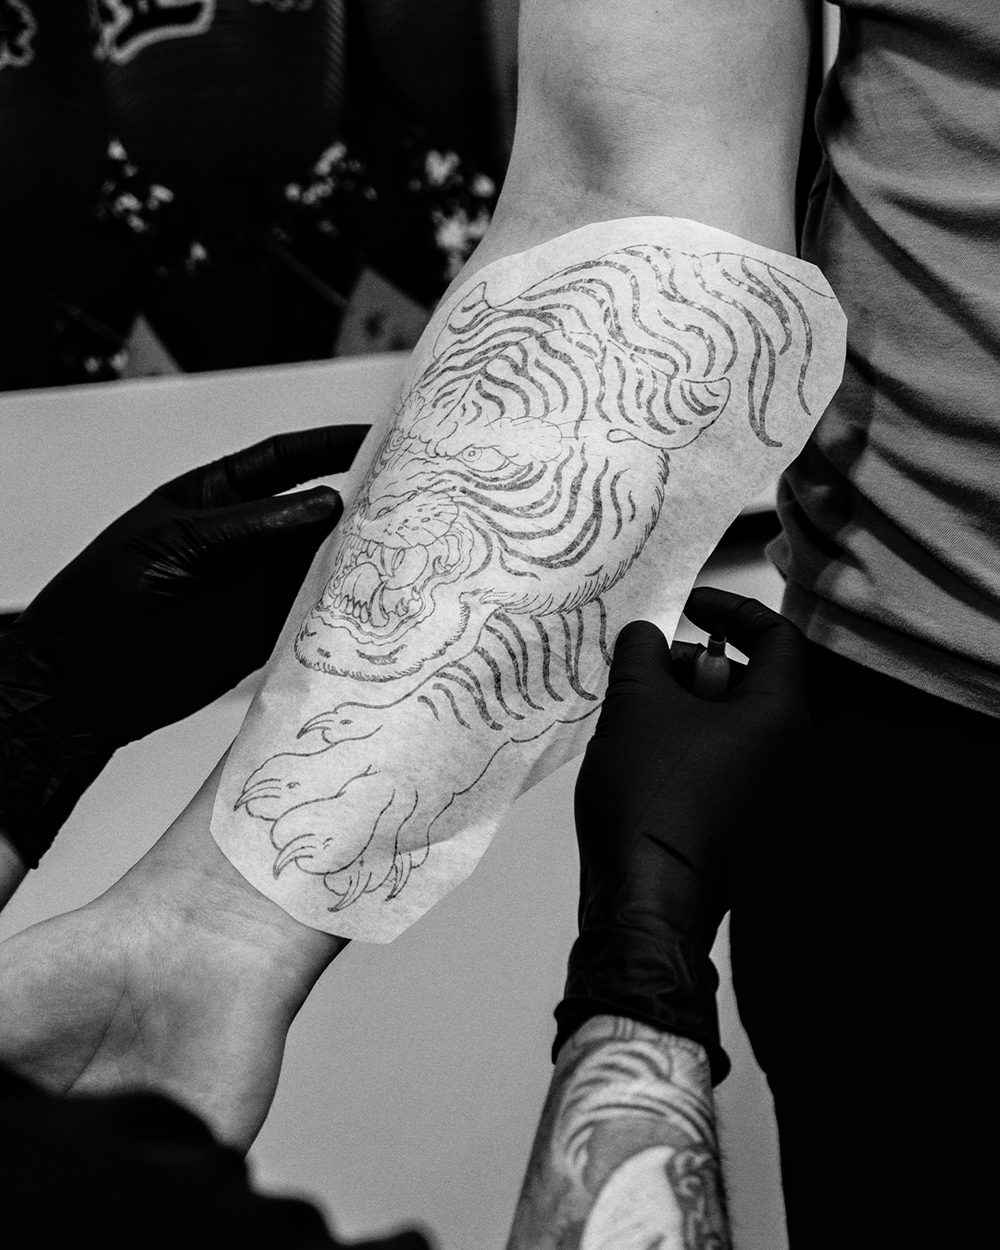 Luke Somerville | Japanese Tattooing, Northern Ireland